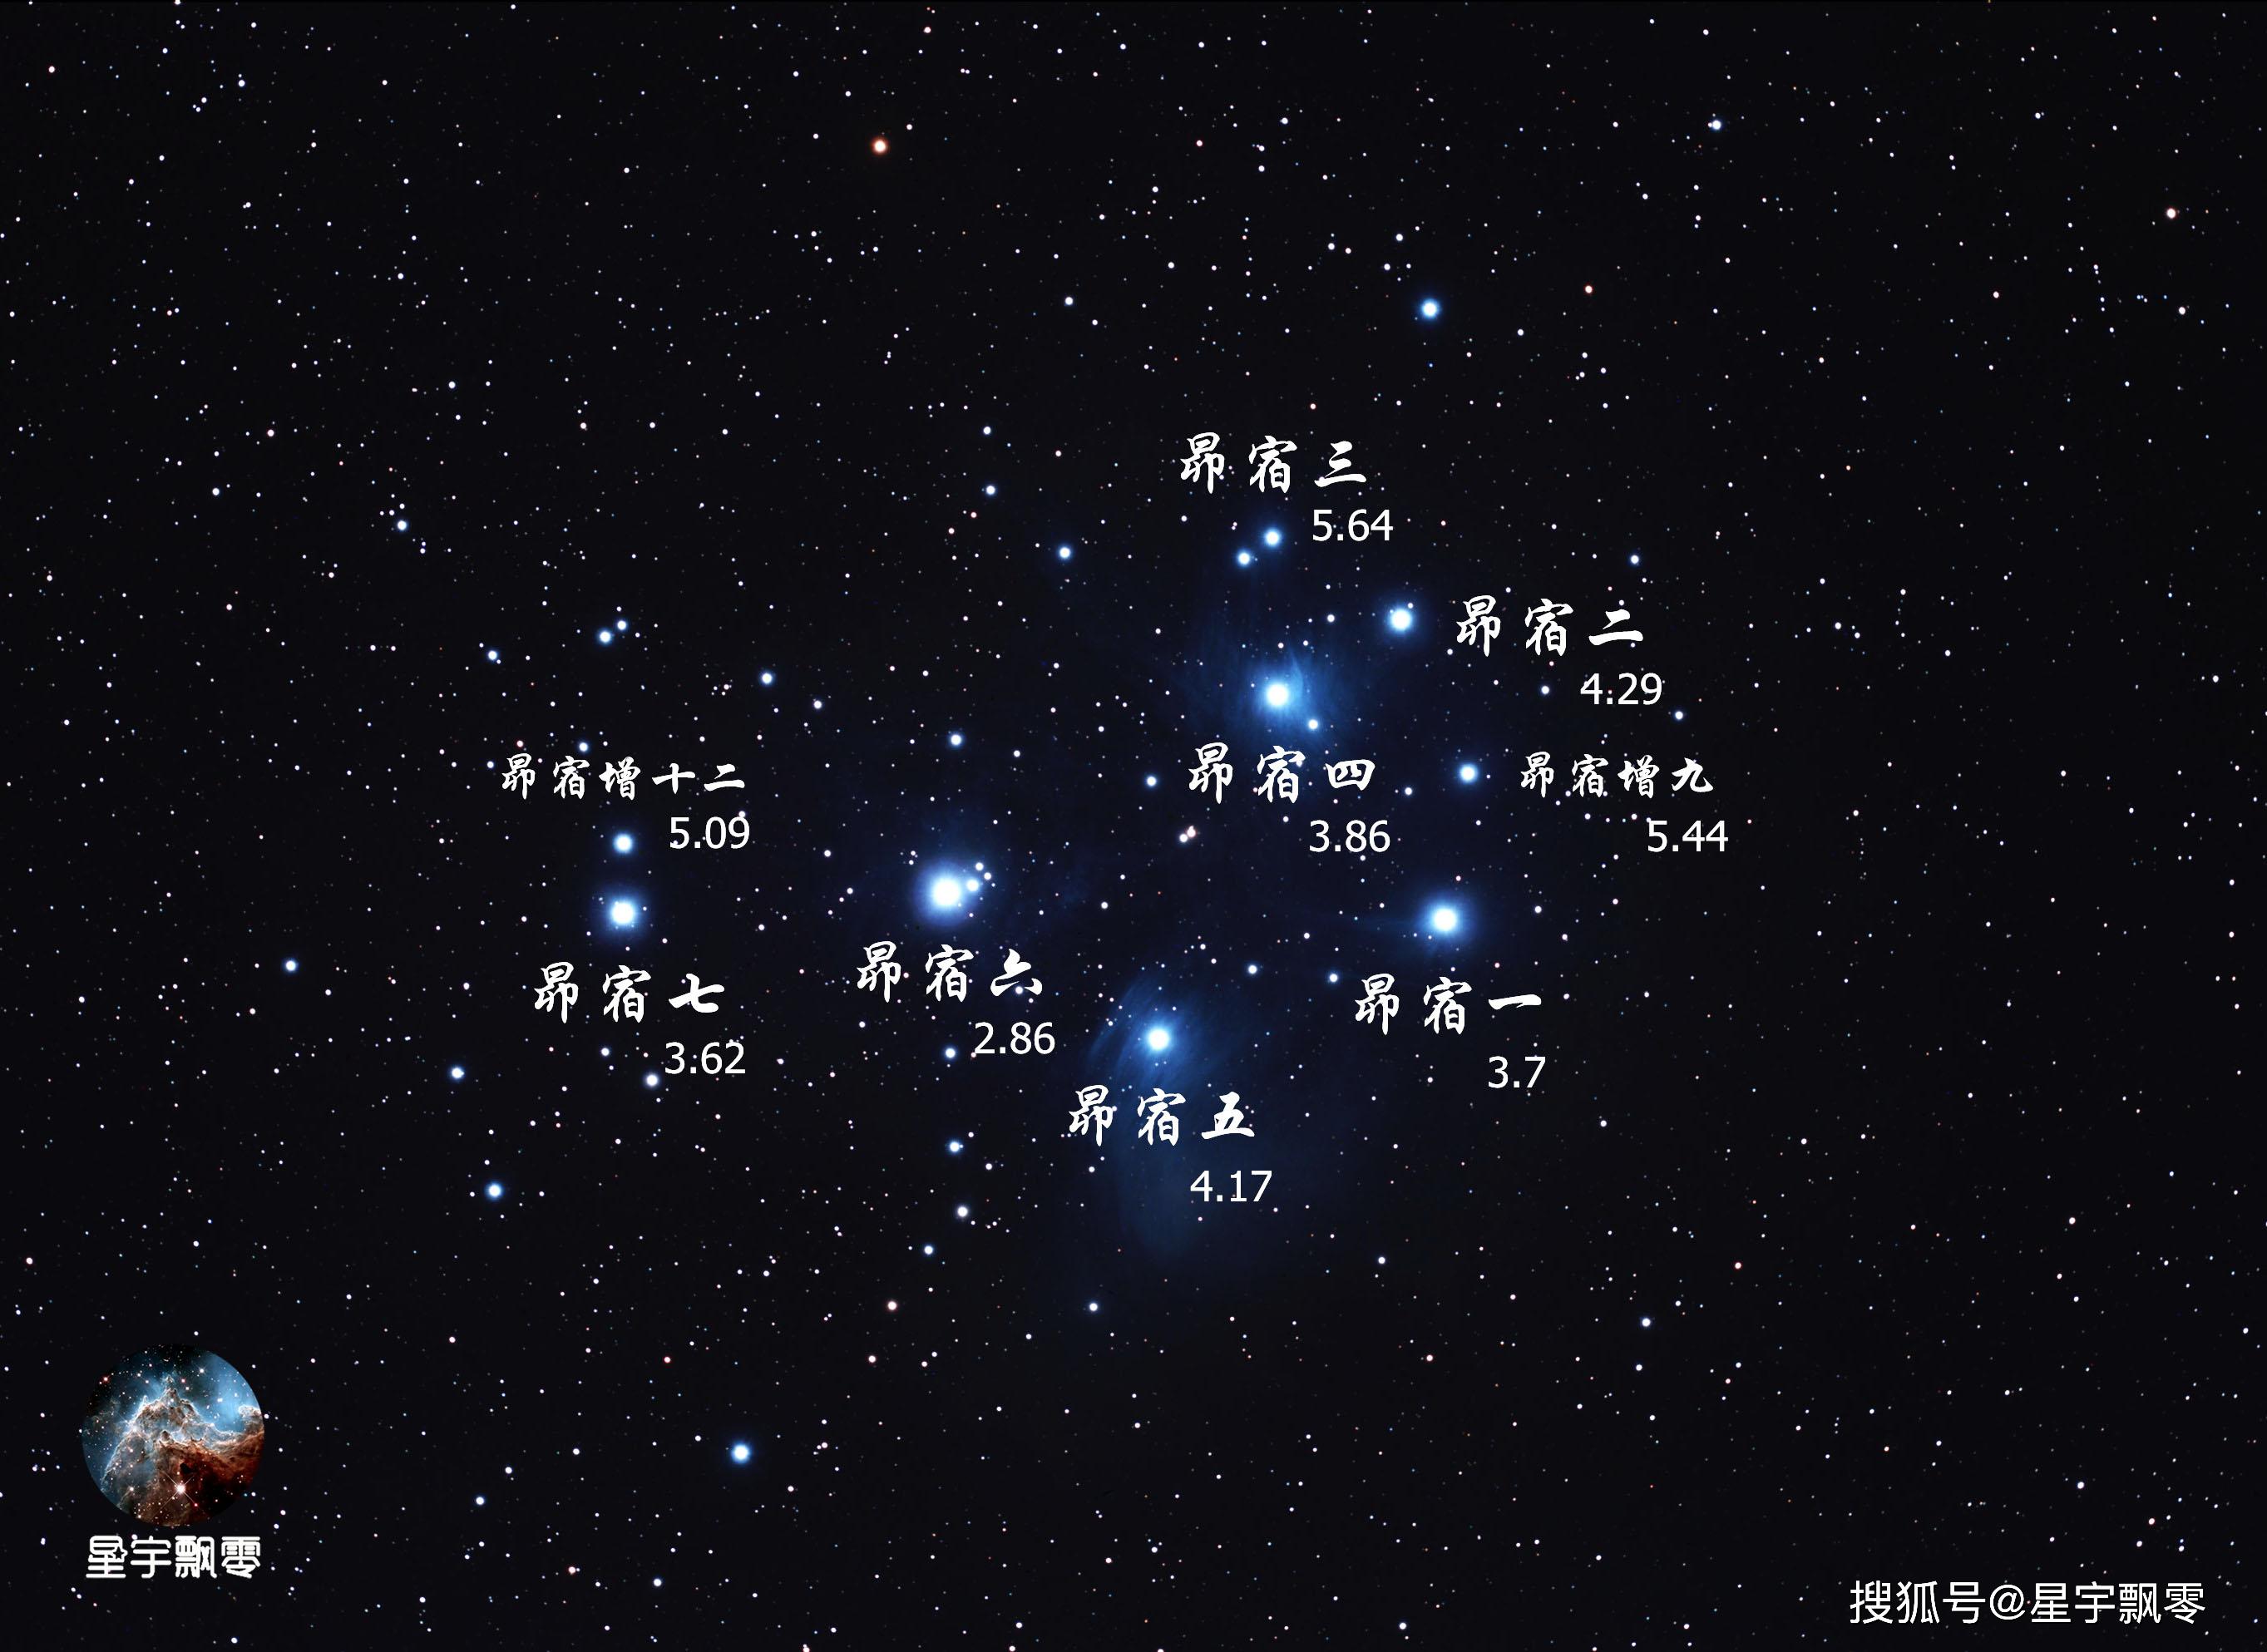 原创金星合昴番外篇星空的钻饰昴星团一个美丽而年轻的蓝白色星团